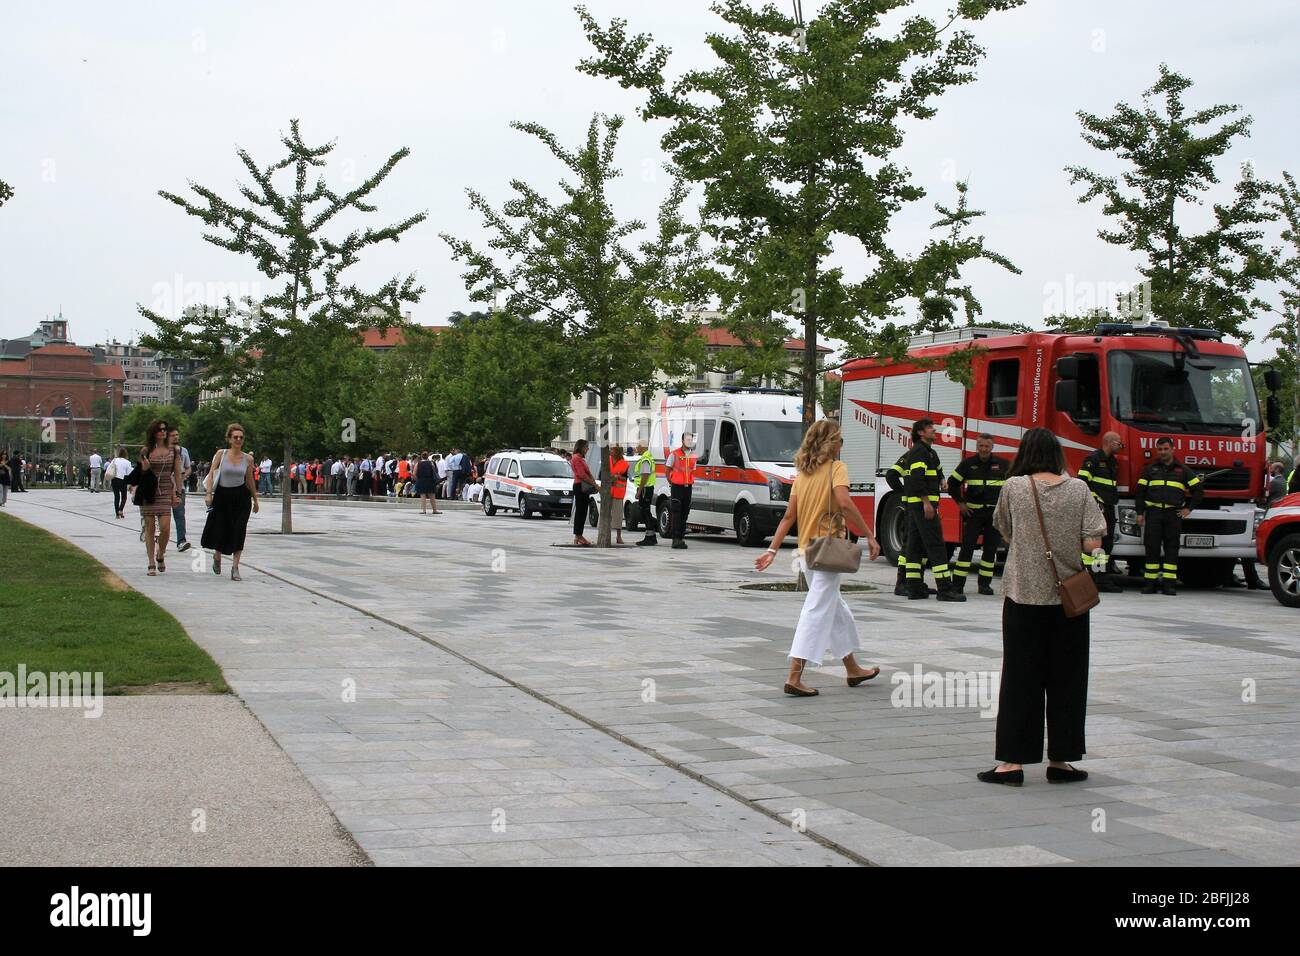 Véhicules d'urgence. Ambulance et camion d'incendie pendant un exercice d'évacuation à Milan, dans le quartier de la City Life. Banque D'Images